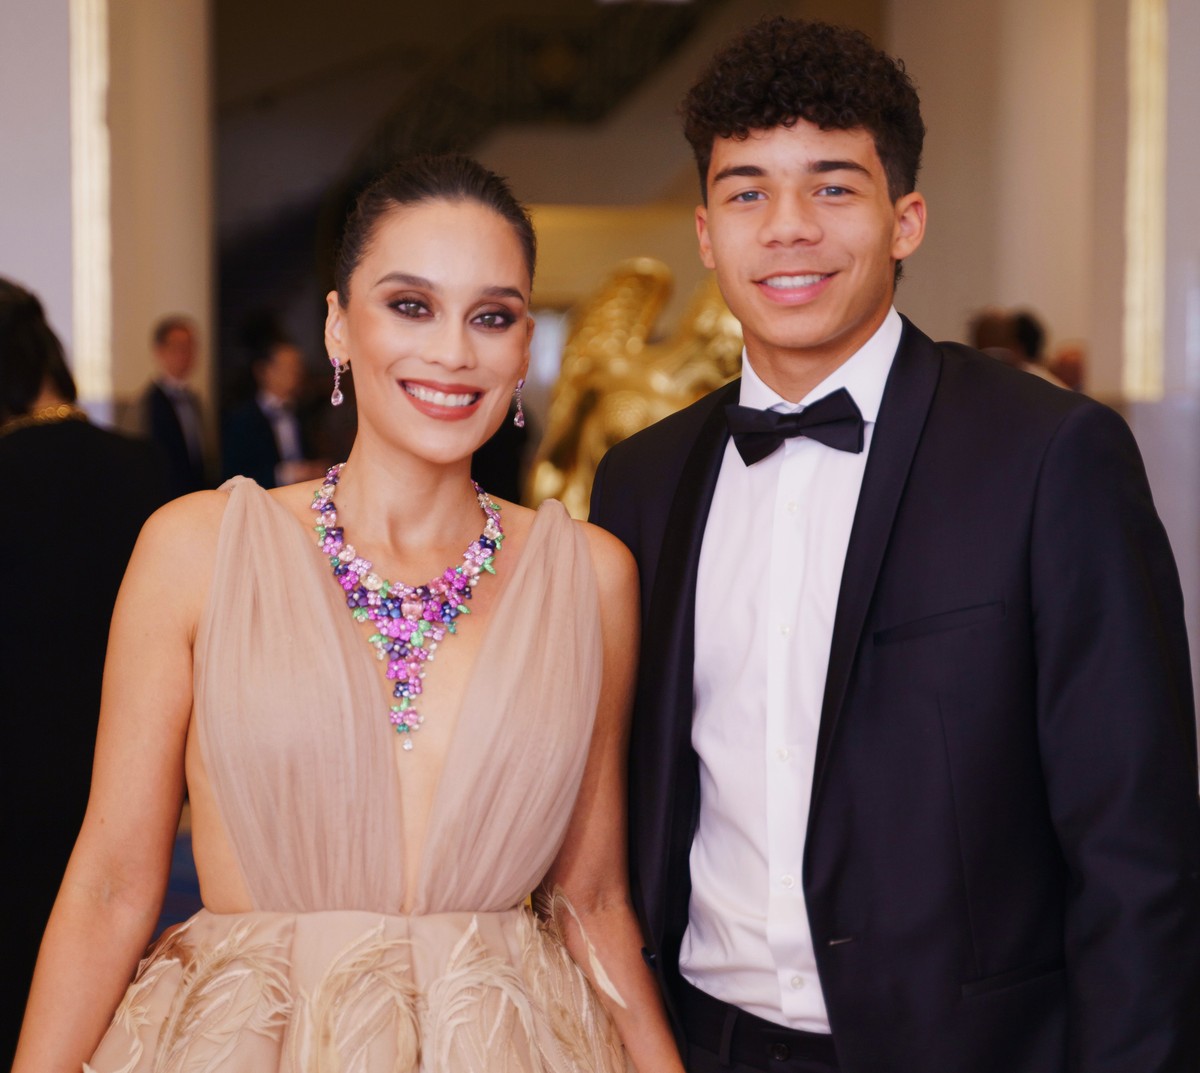 Clarice Alves raconte sa rencontre avec une star hollywoodienne à Cannes avec son fils Enzo |  célébrités